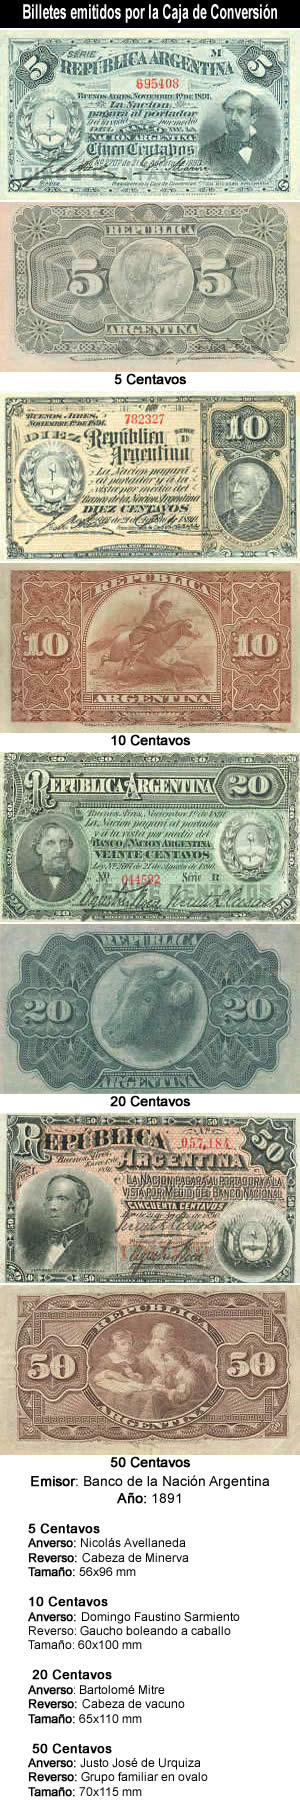 Peso Moneda Nacional Emisión 1891 por la Caja de Conversión